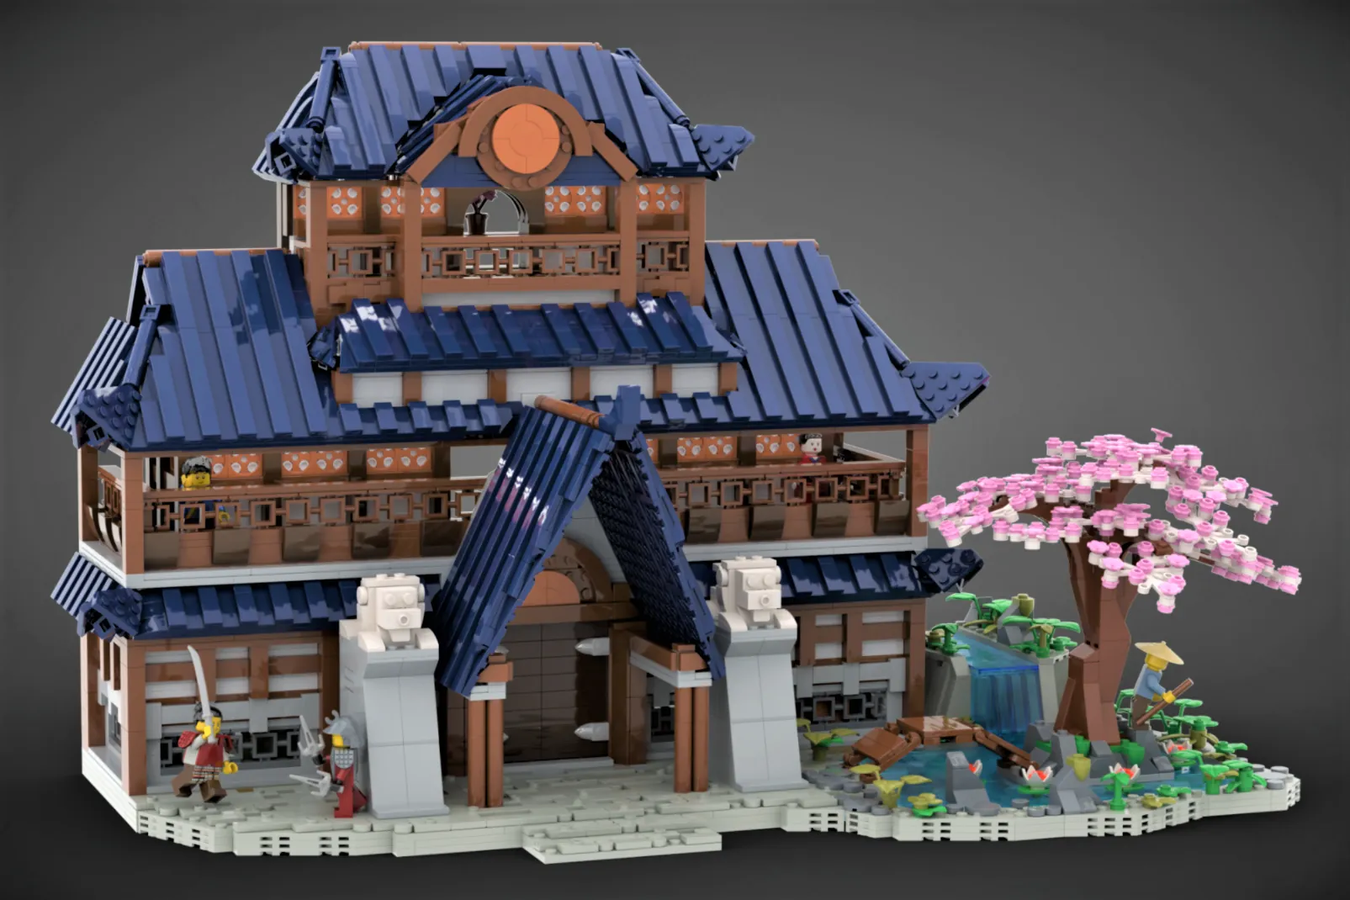 Découvrez la magie du Japon avec LEGO - Comme au Japon